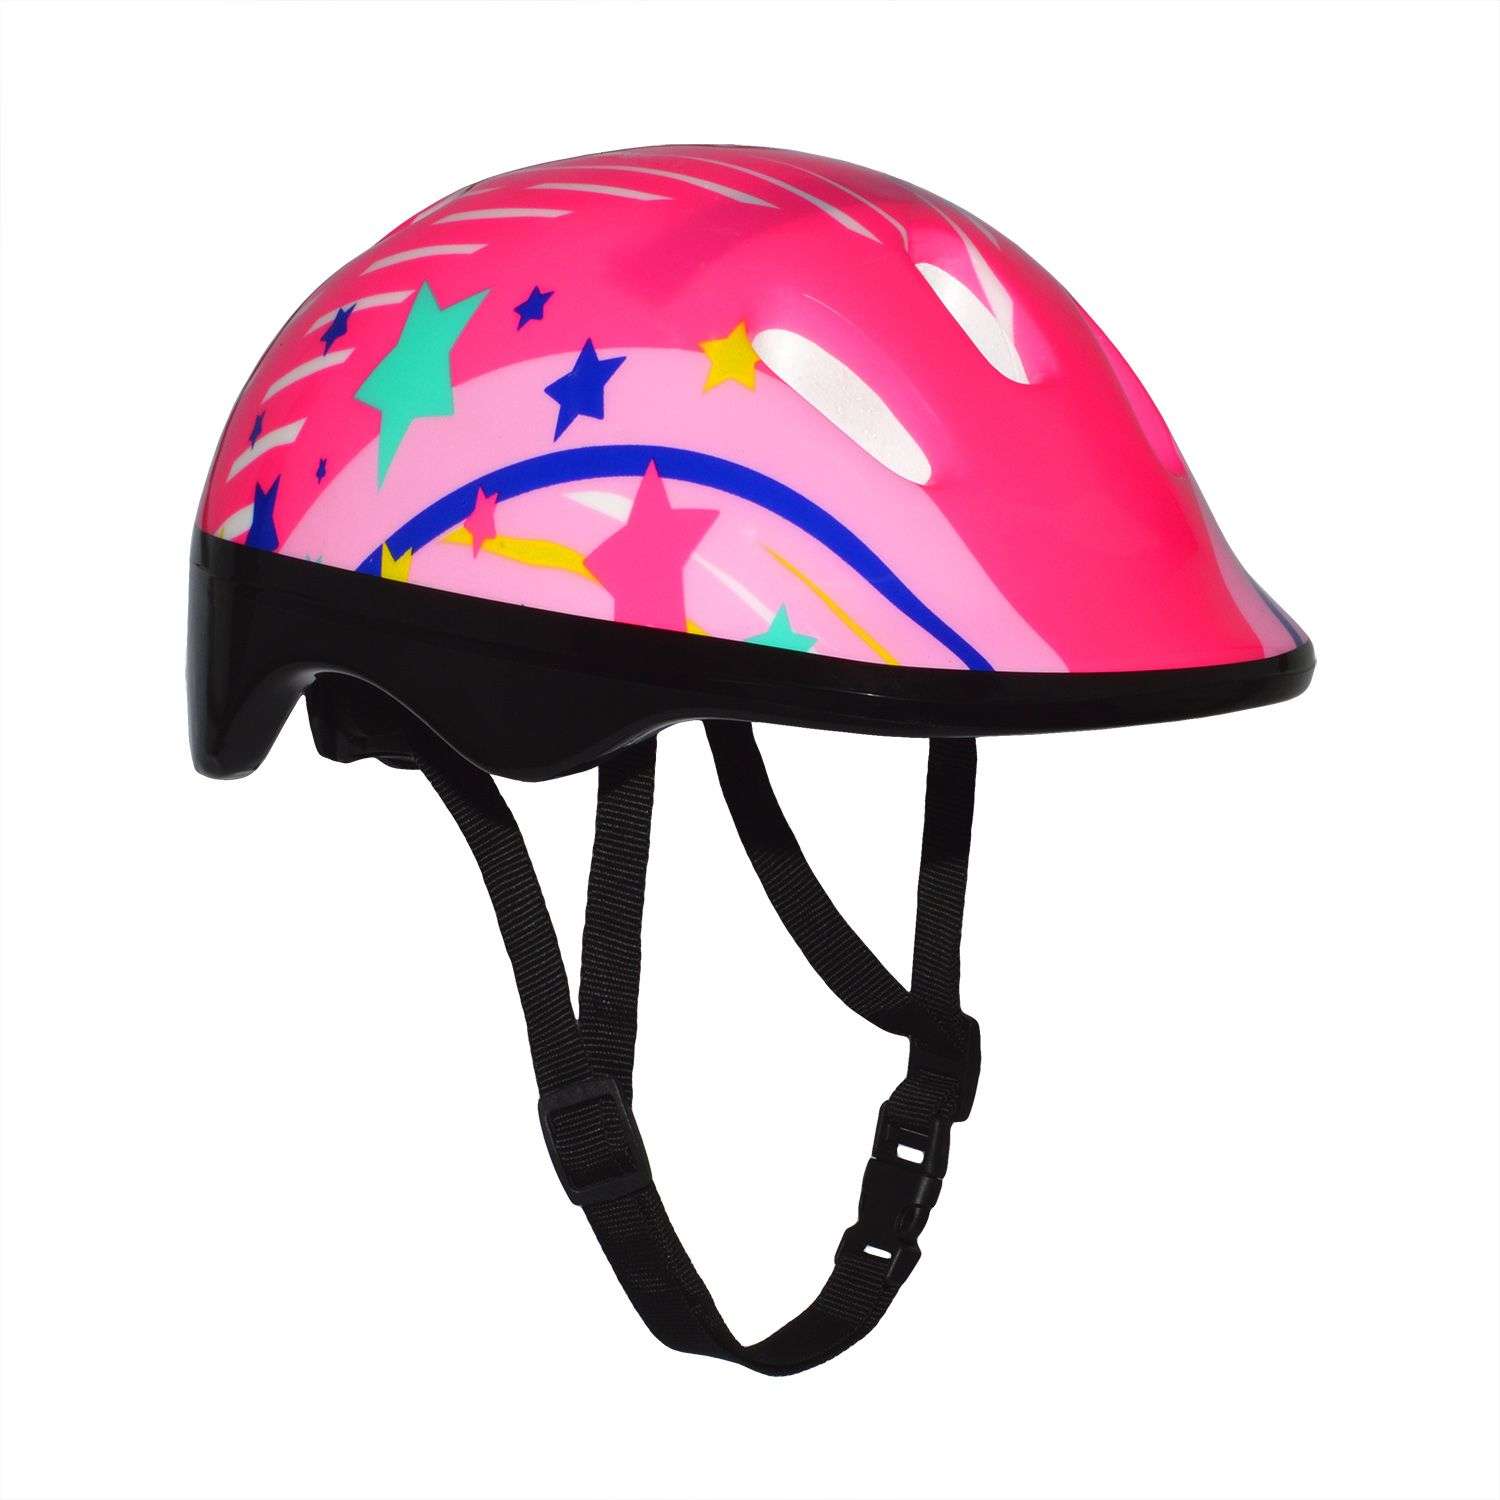 Роликовый комплект Sport Collection в сумке SET JOYFULL Pink ролики р. 29-32 Шлем 50-56 Защита S/M - фото 4